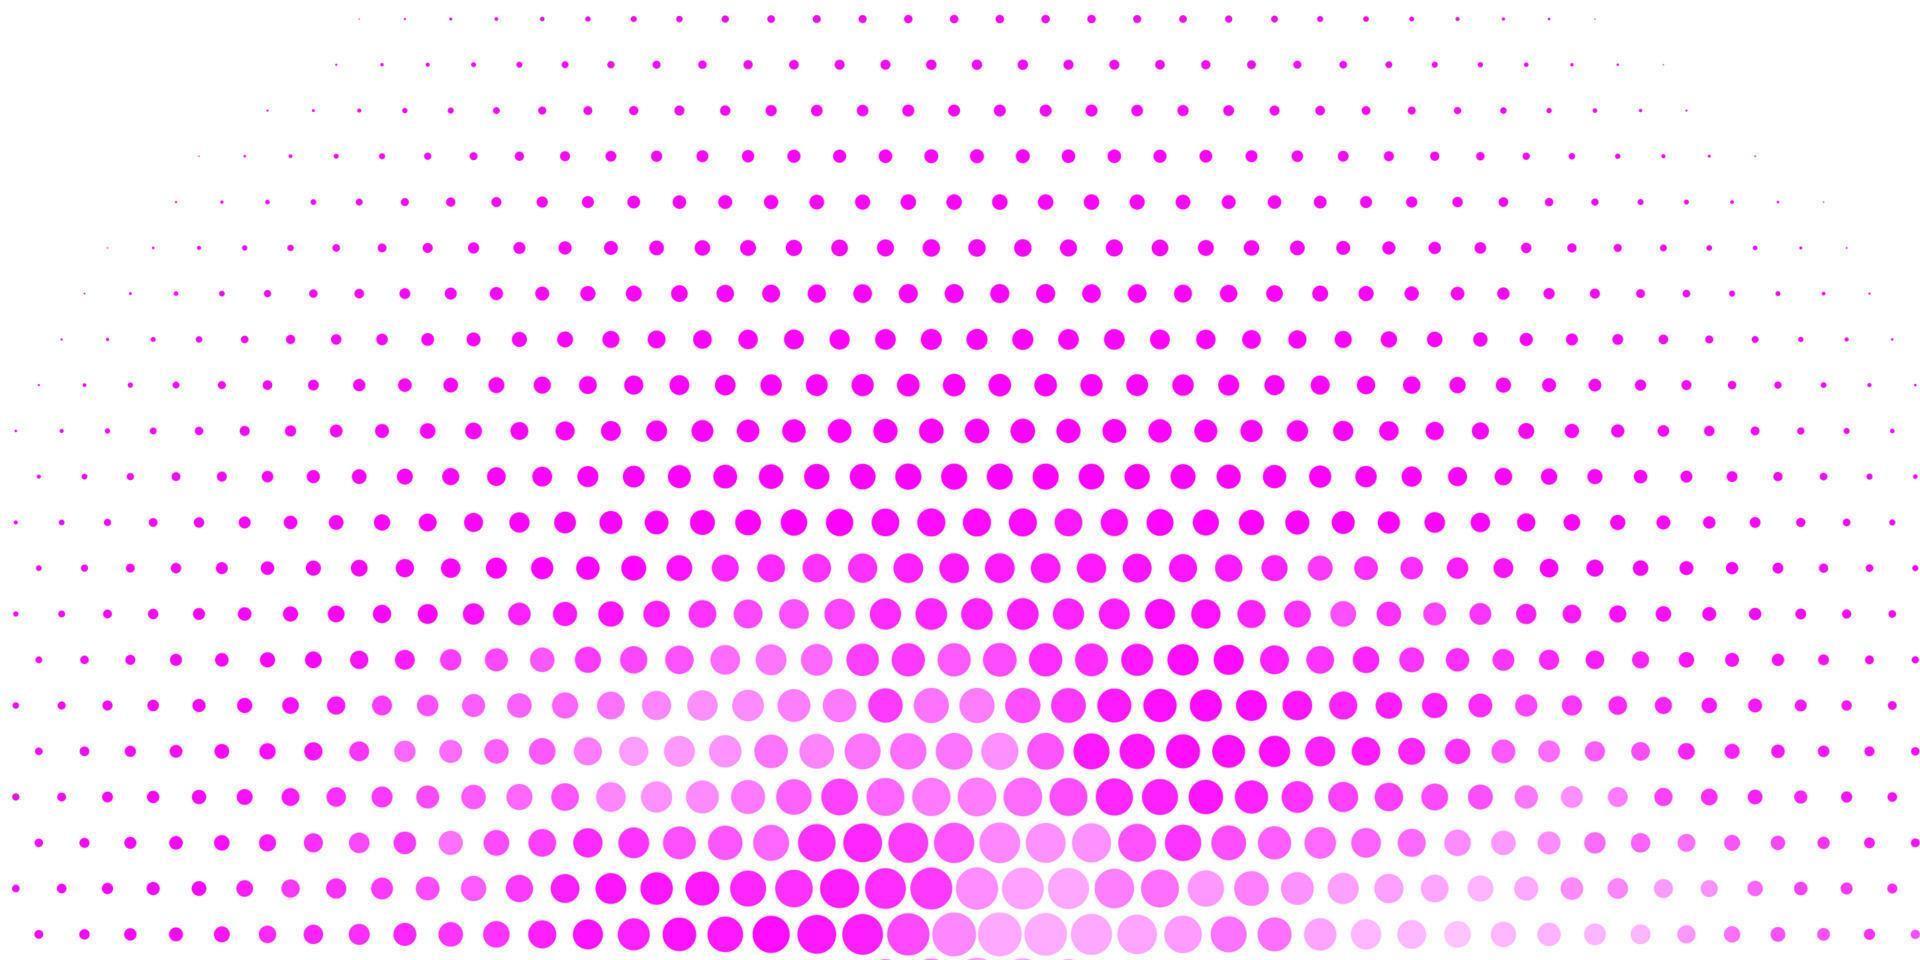 modelo de vetor roxo claro com círculos.